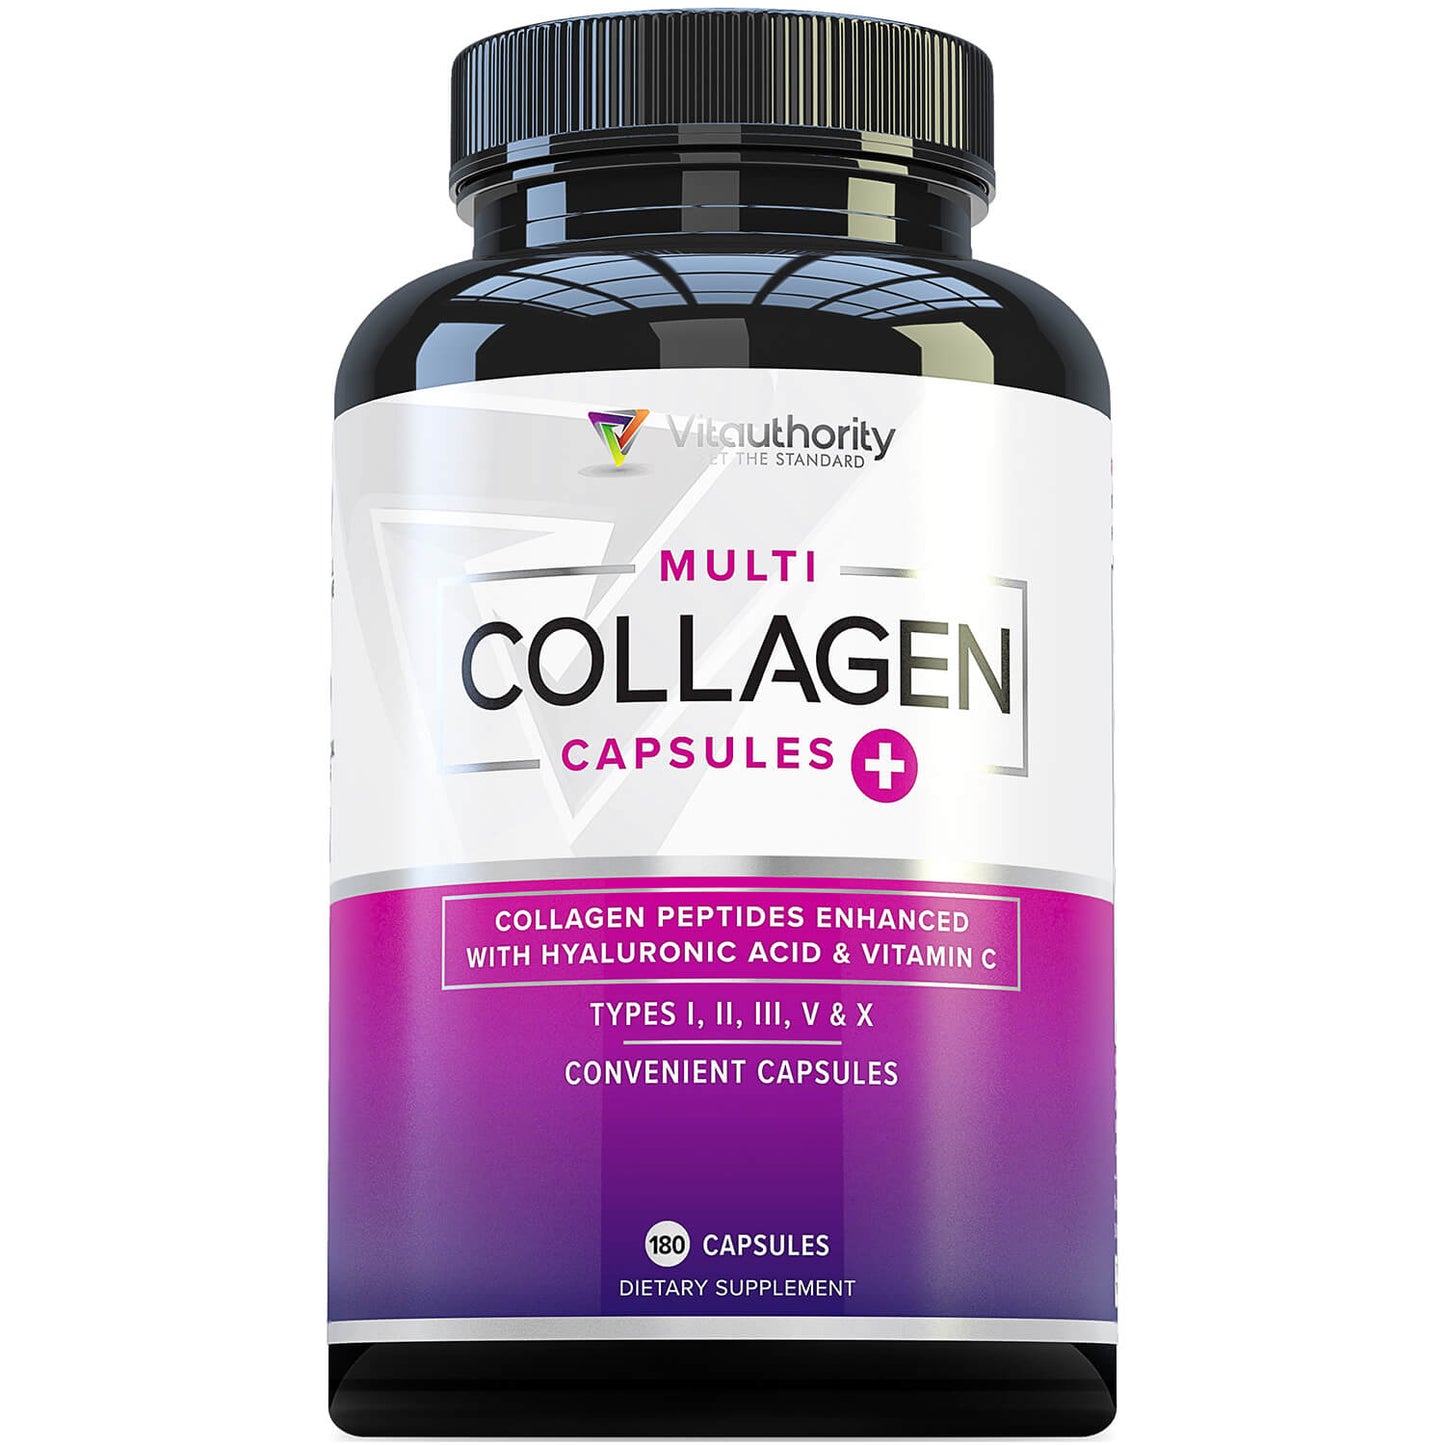 PROMO: Multi Collagen Capsules - 180 Capsules